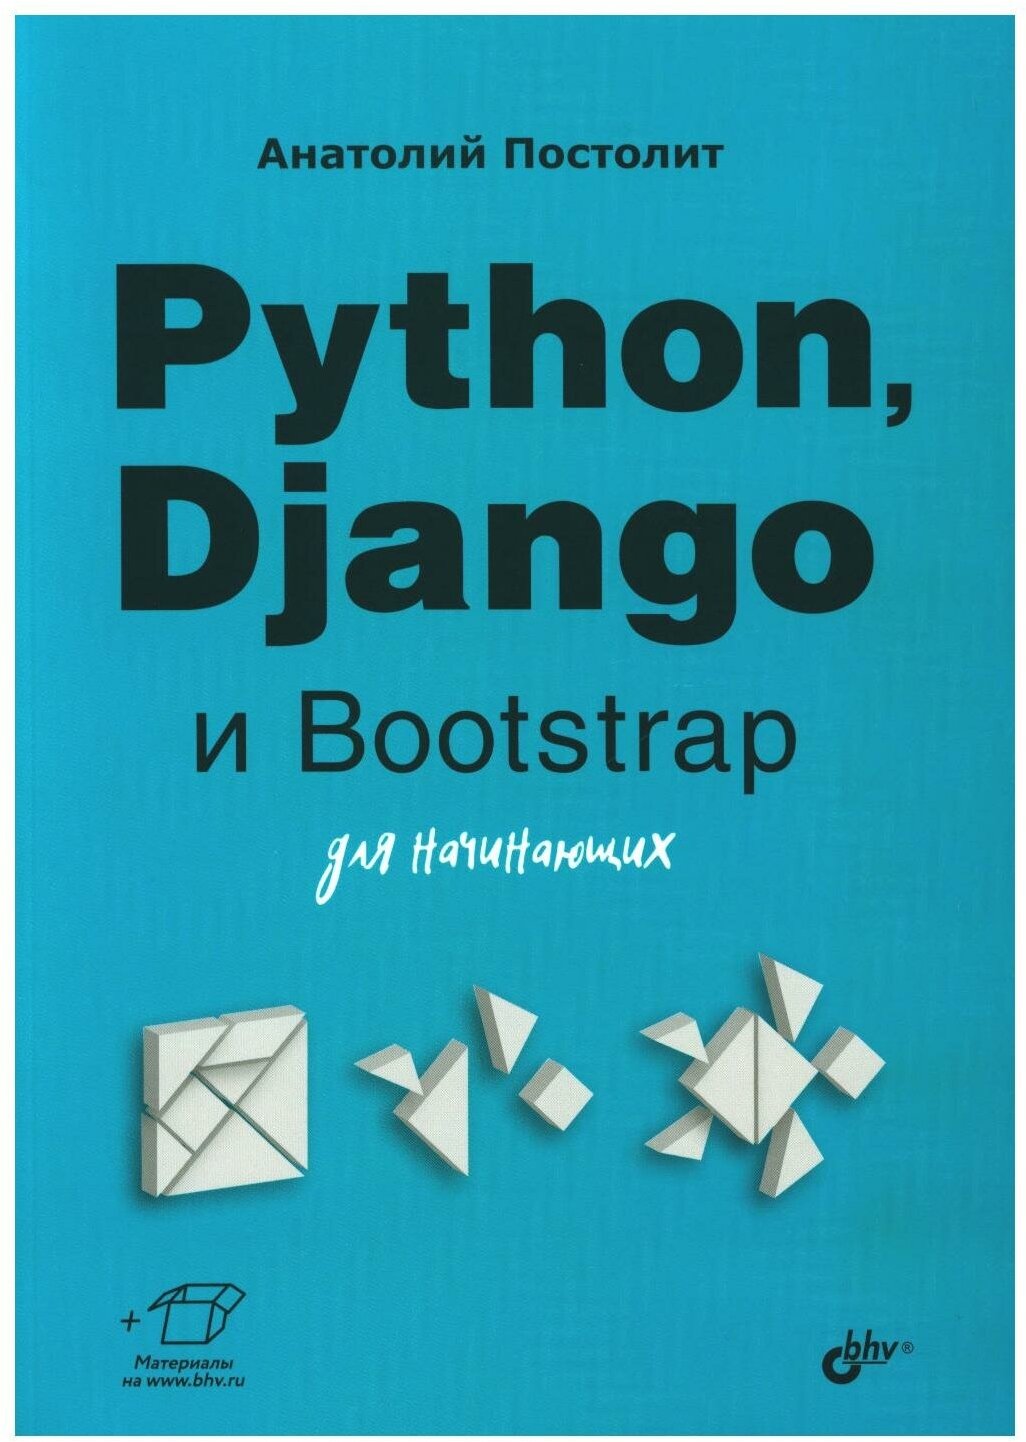 Python, Django и Bootstrap для начинающих - фото №1